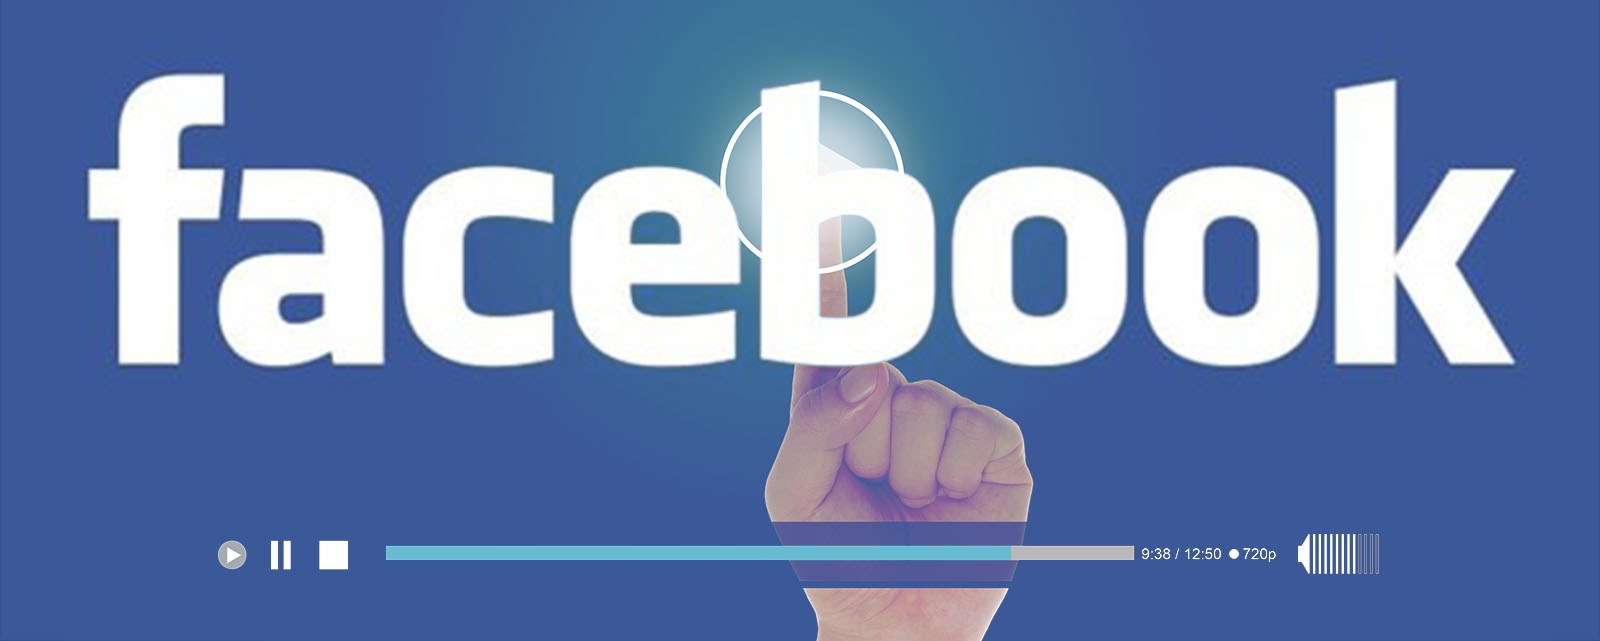 Vídeos no Facebook: impulsione sua fanpage com vídeos para internet